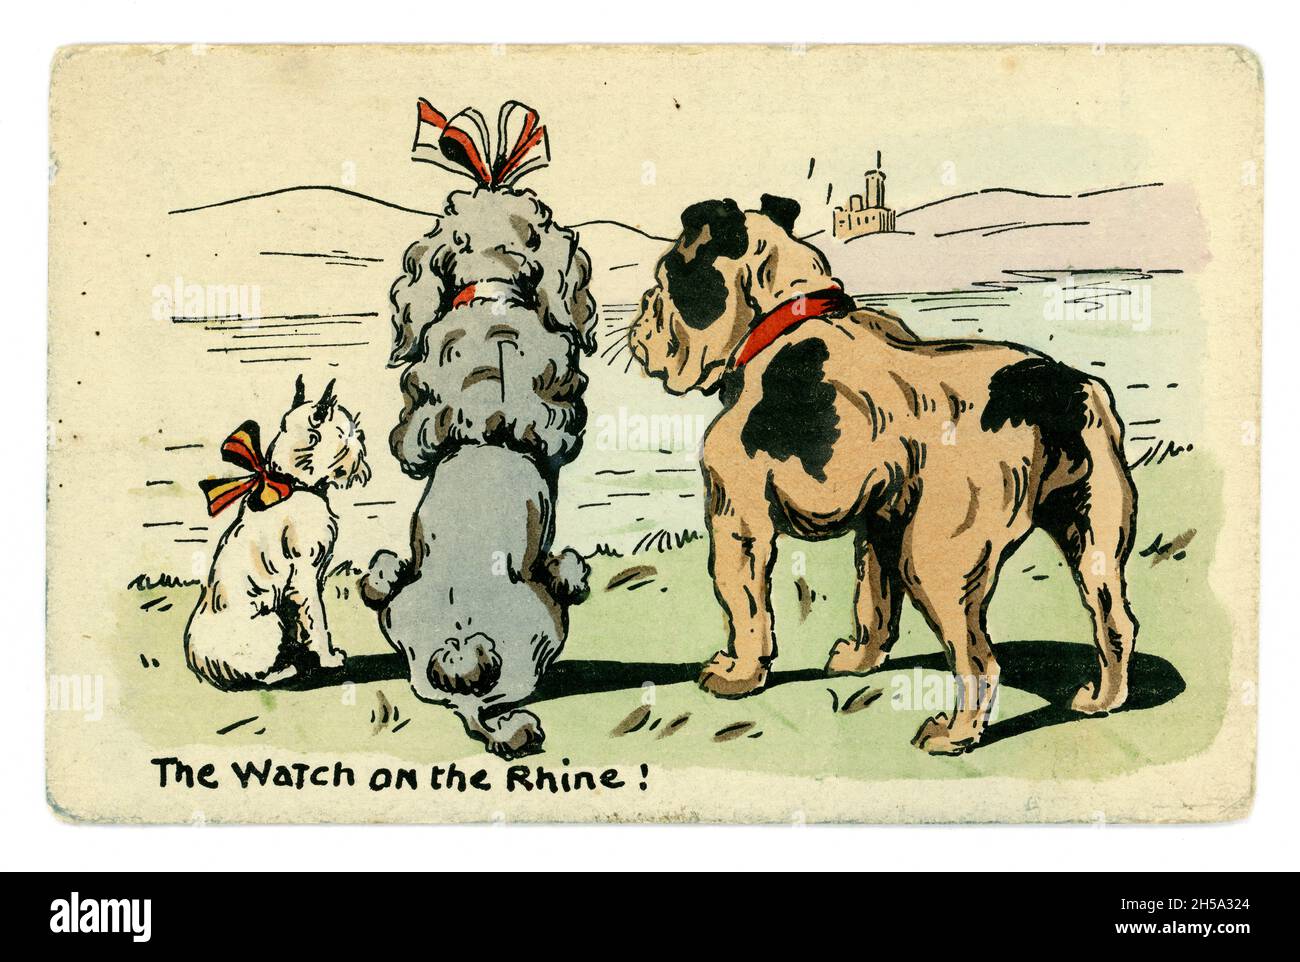 Carte postale originale de la première Guerre mondiale de 3 chiens représentant les alliés - France Belgique, Grande-Bretagne.La montre sur le Rhin!Était un hymne patriotique allemand.Carte publiée par E.W.Savory Ltd. Bristol, Royaume-Uni vers 1914 Banque D'Images